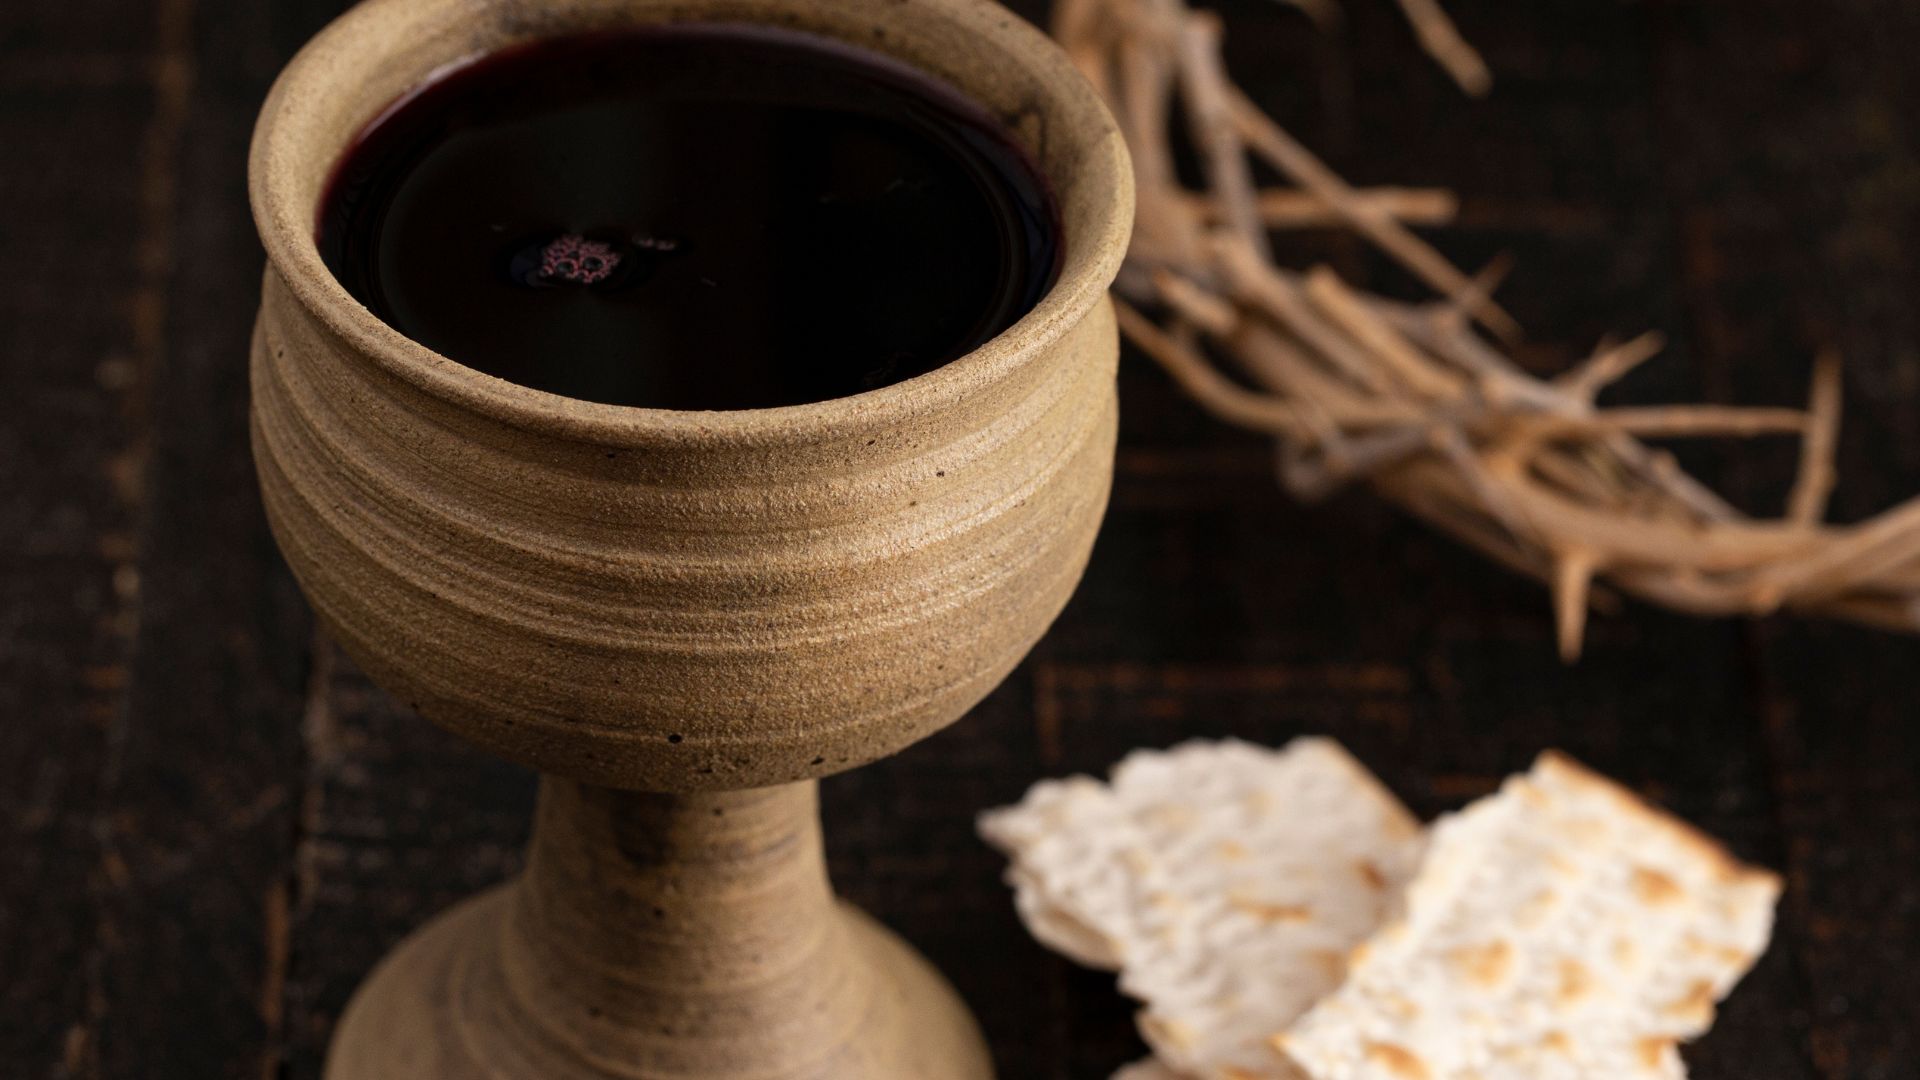 Imagem de uma taça de vinho, pães ázimos e uma coroa de espinhos do lado como representação da ceia de Jesus